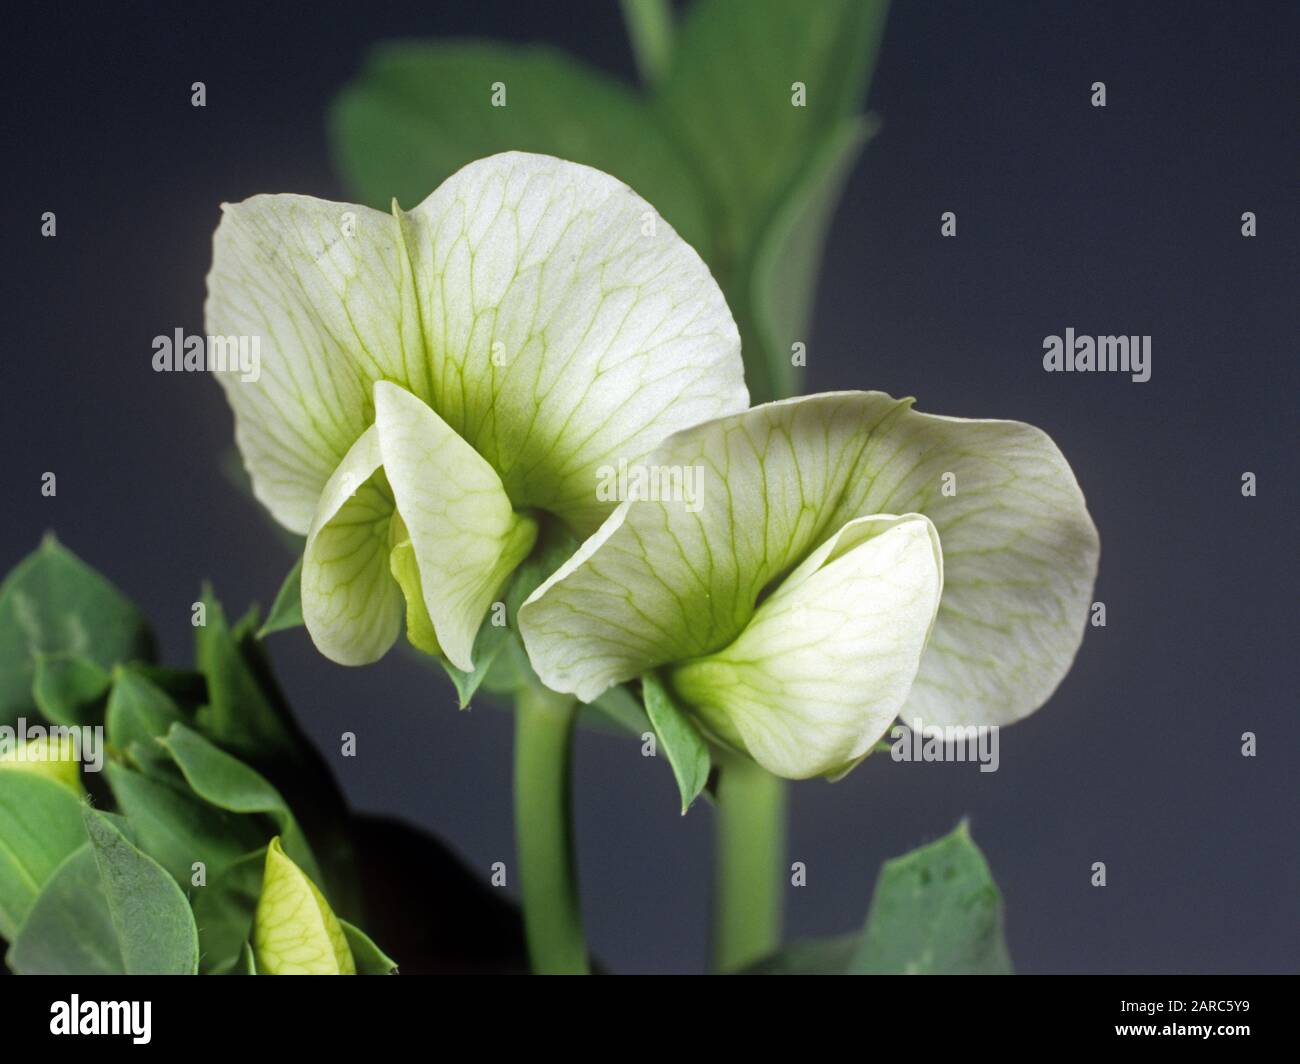 Blätter und weiße Blüte mit fünf Kronblättern und Grünvenation einer Erbse (Pisum sativum) Stockfoto